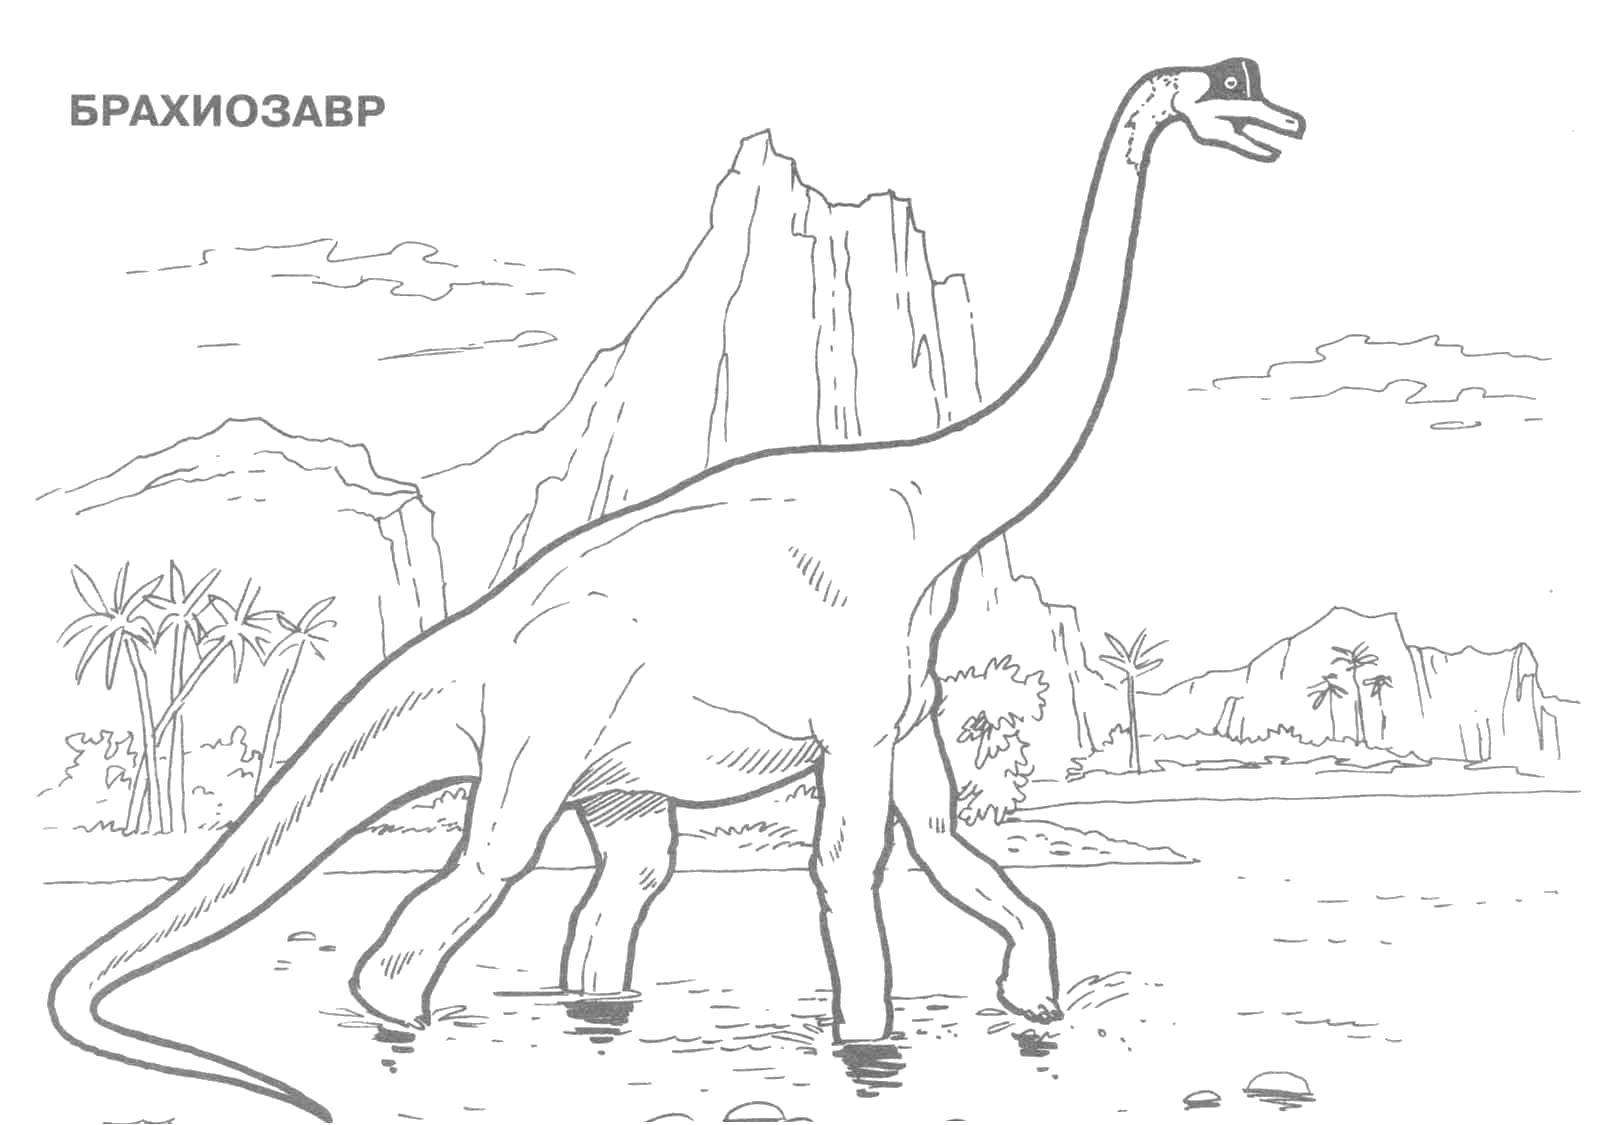 Название: Раскраска Брахиозавр. Категория: парк юрского периода. Теги: Динозавры.